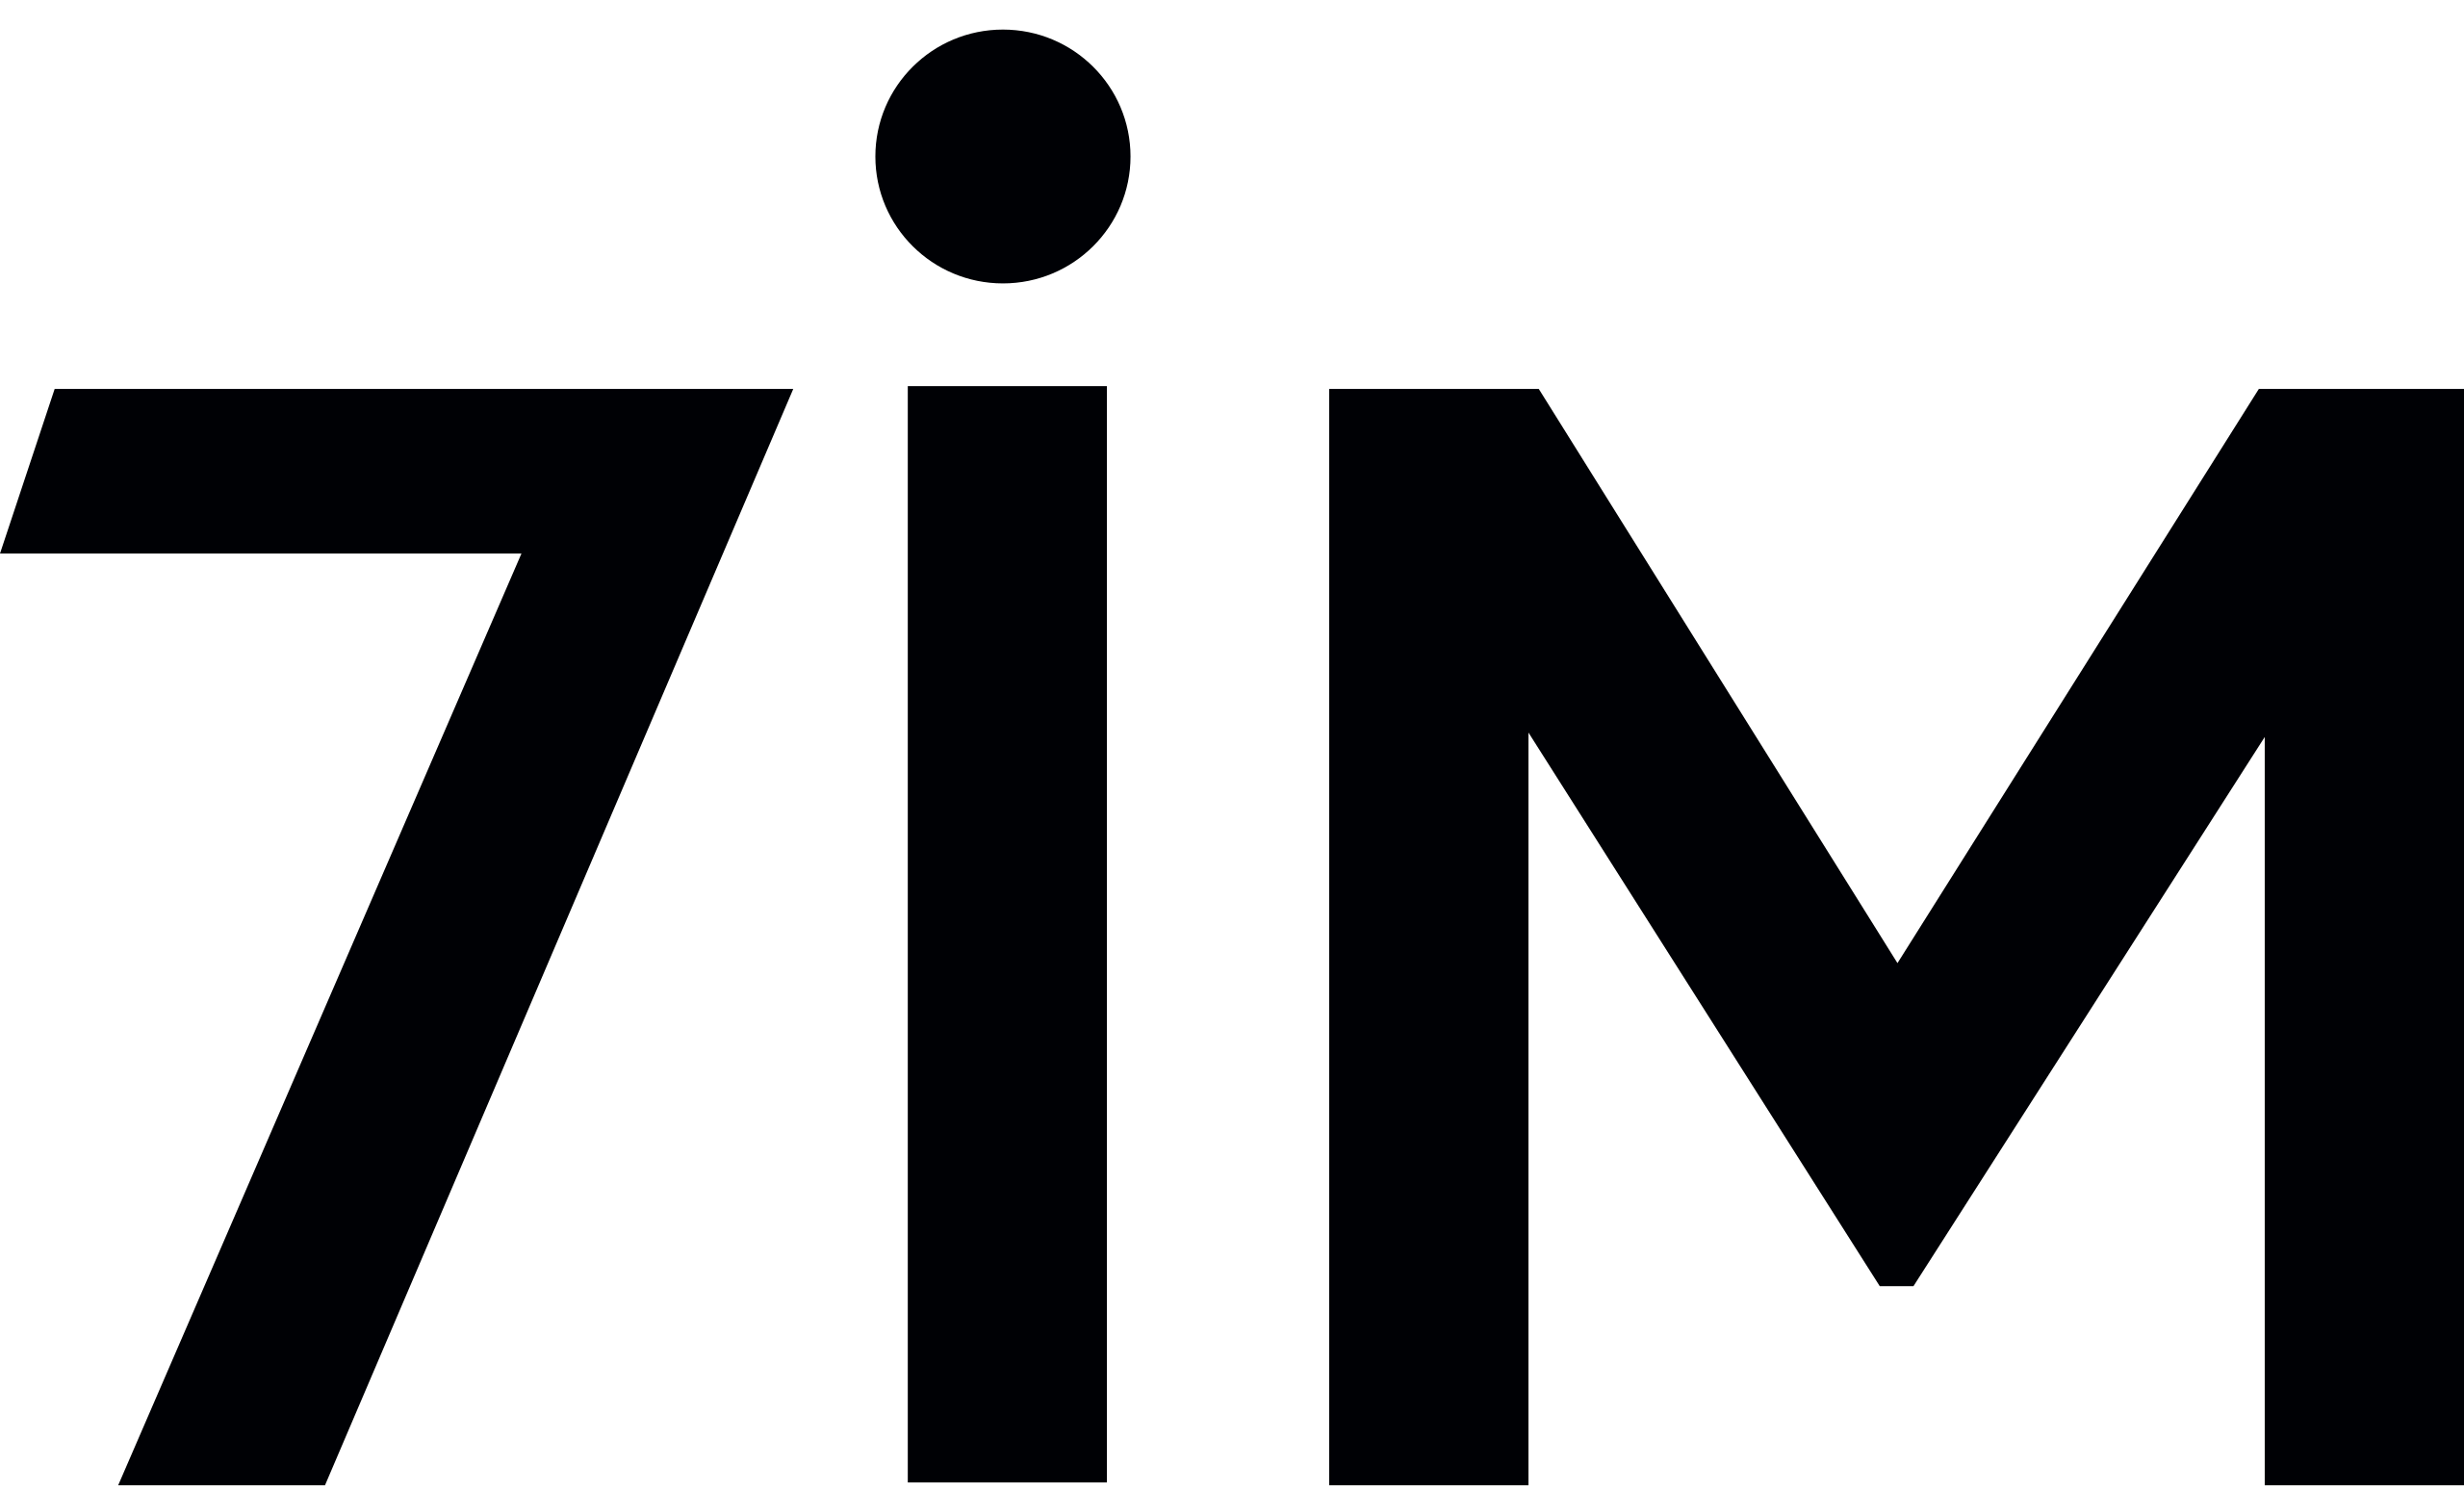 7IM logo